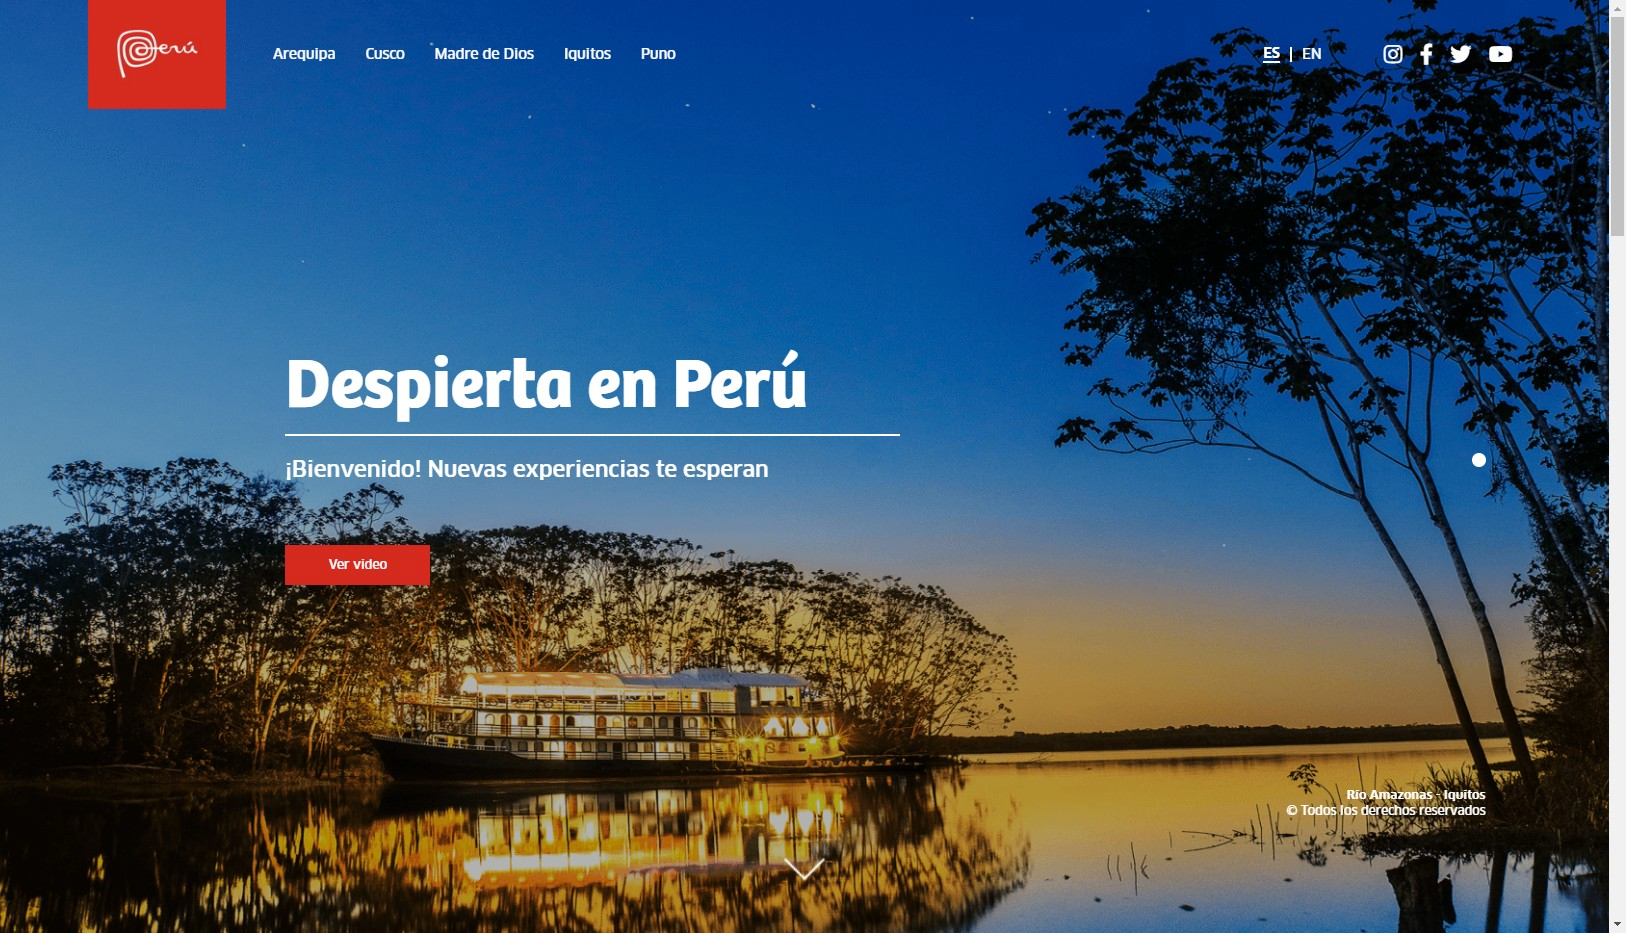 ペルー観光キャンペーン「デスピエルタ・エン・ペルー」がスタート